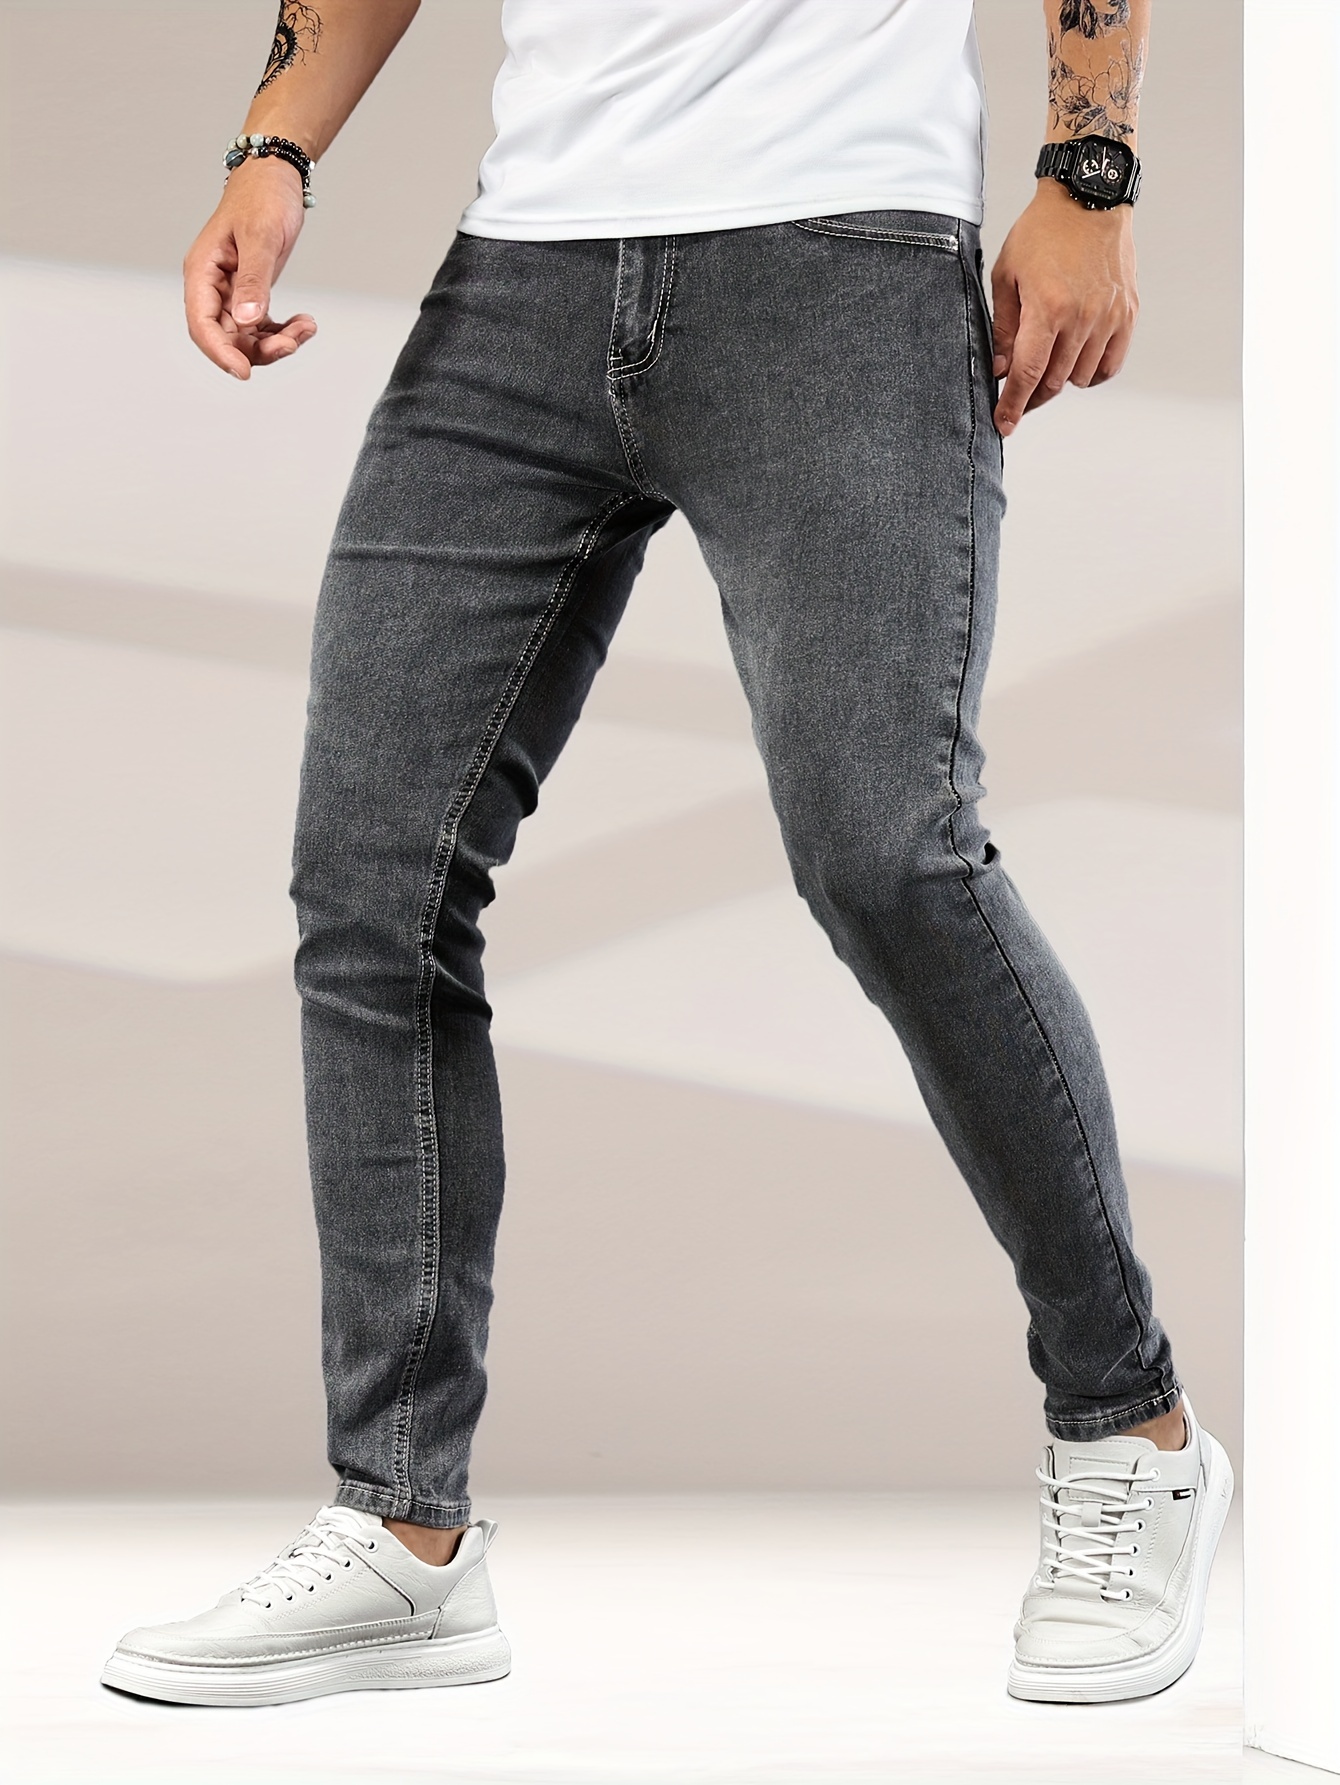 Men's Jeans Men Long Pants Stretch Summer Denim Trousers Plus Size